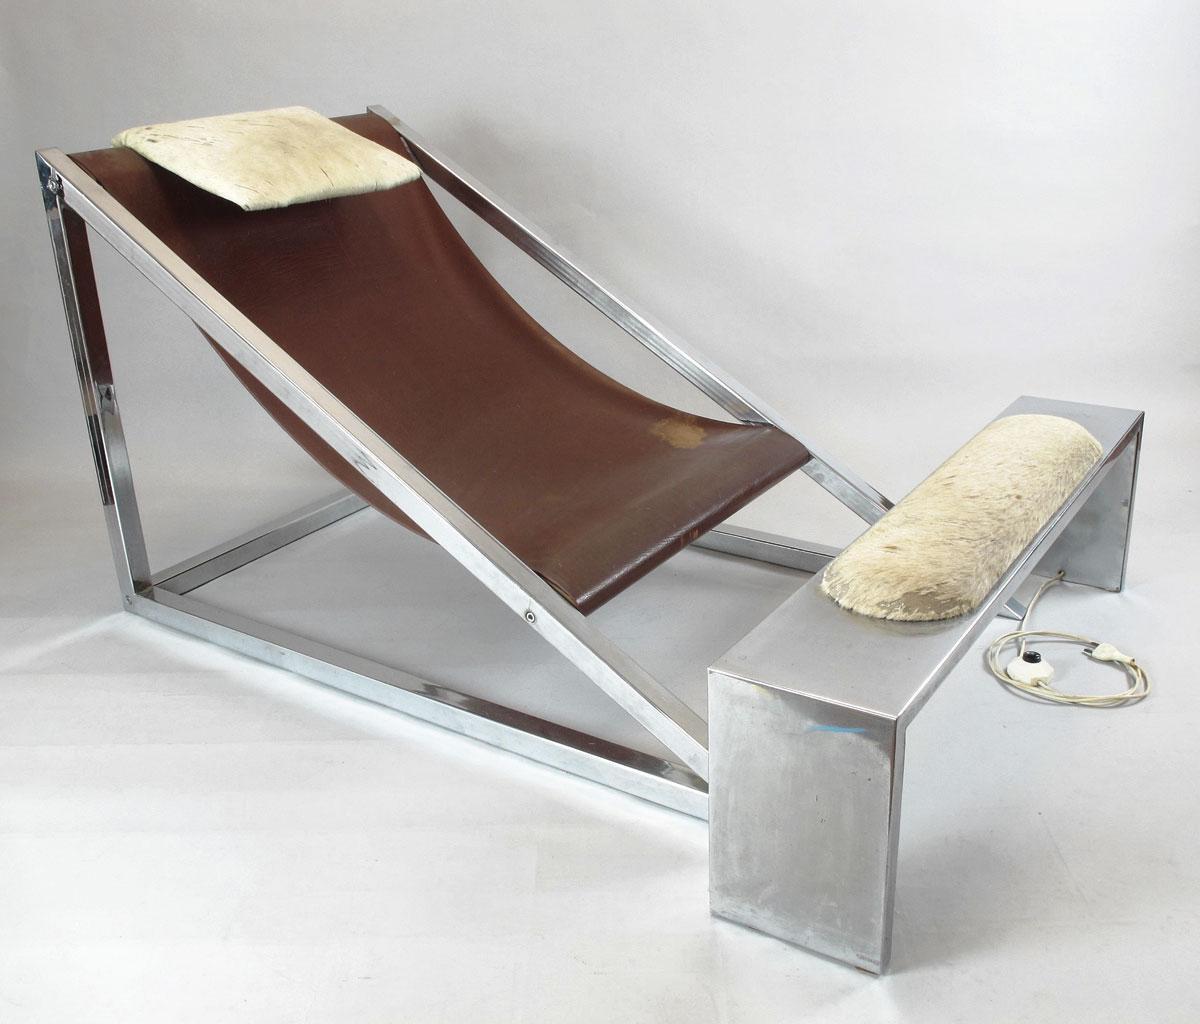 Dans les sixties, le design italien radical d'Archizoom pour ce siège Mies.